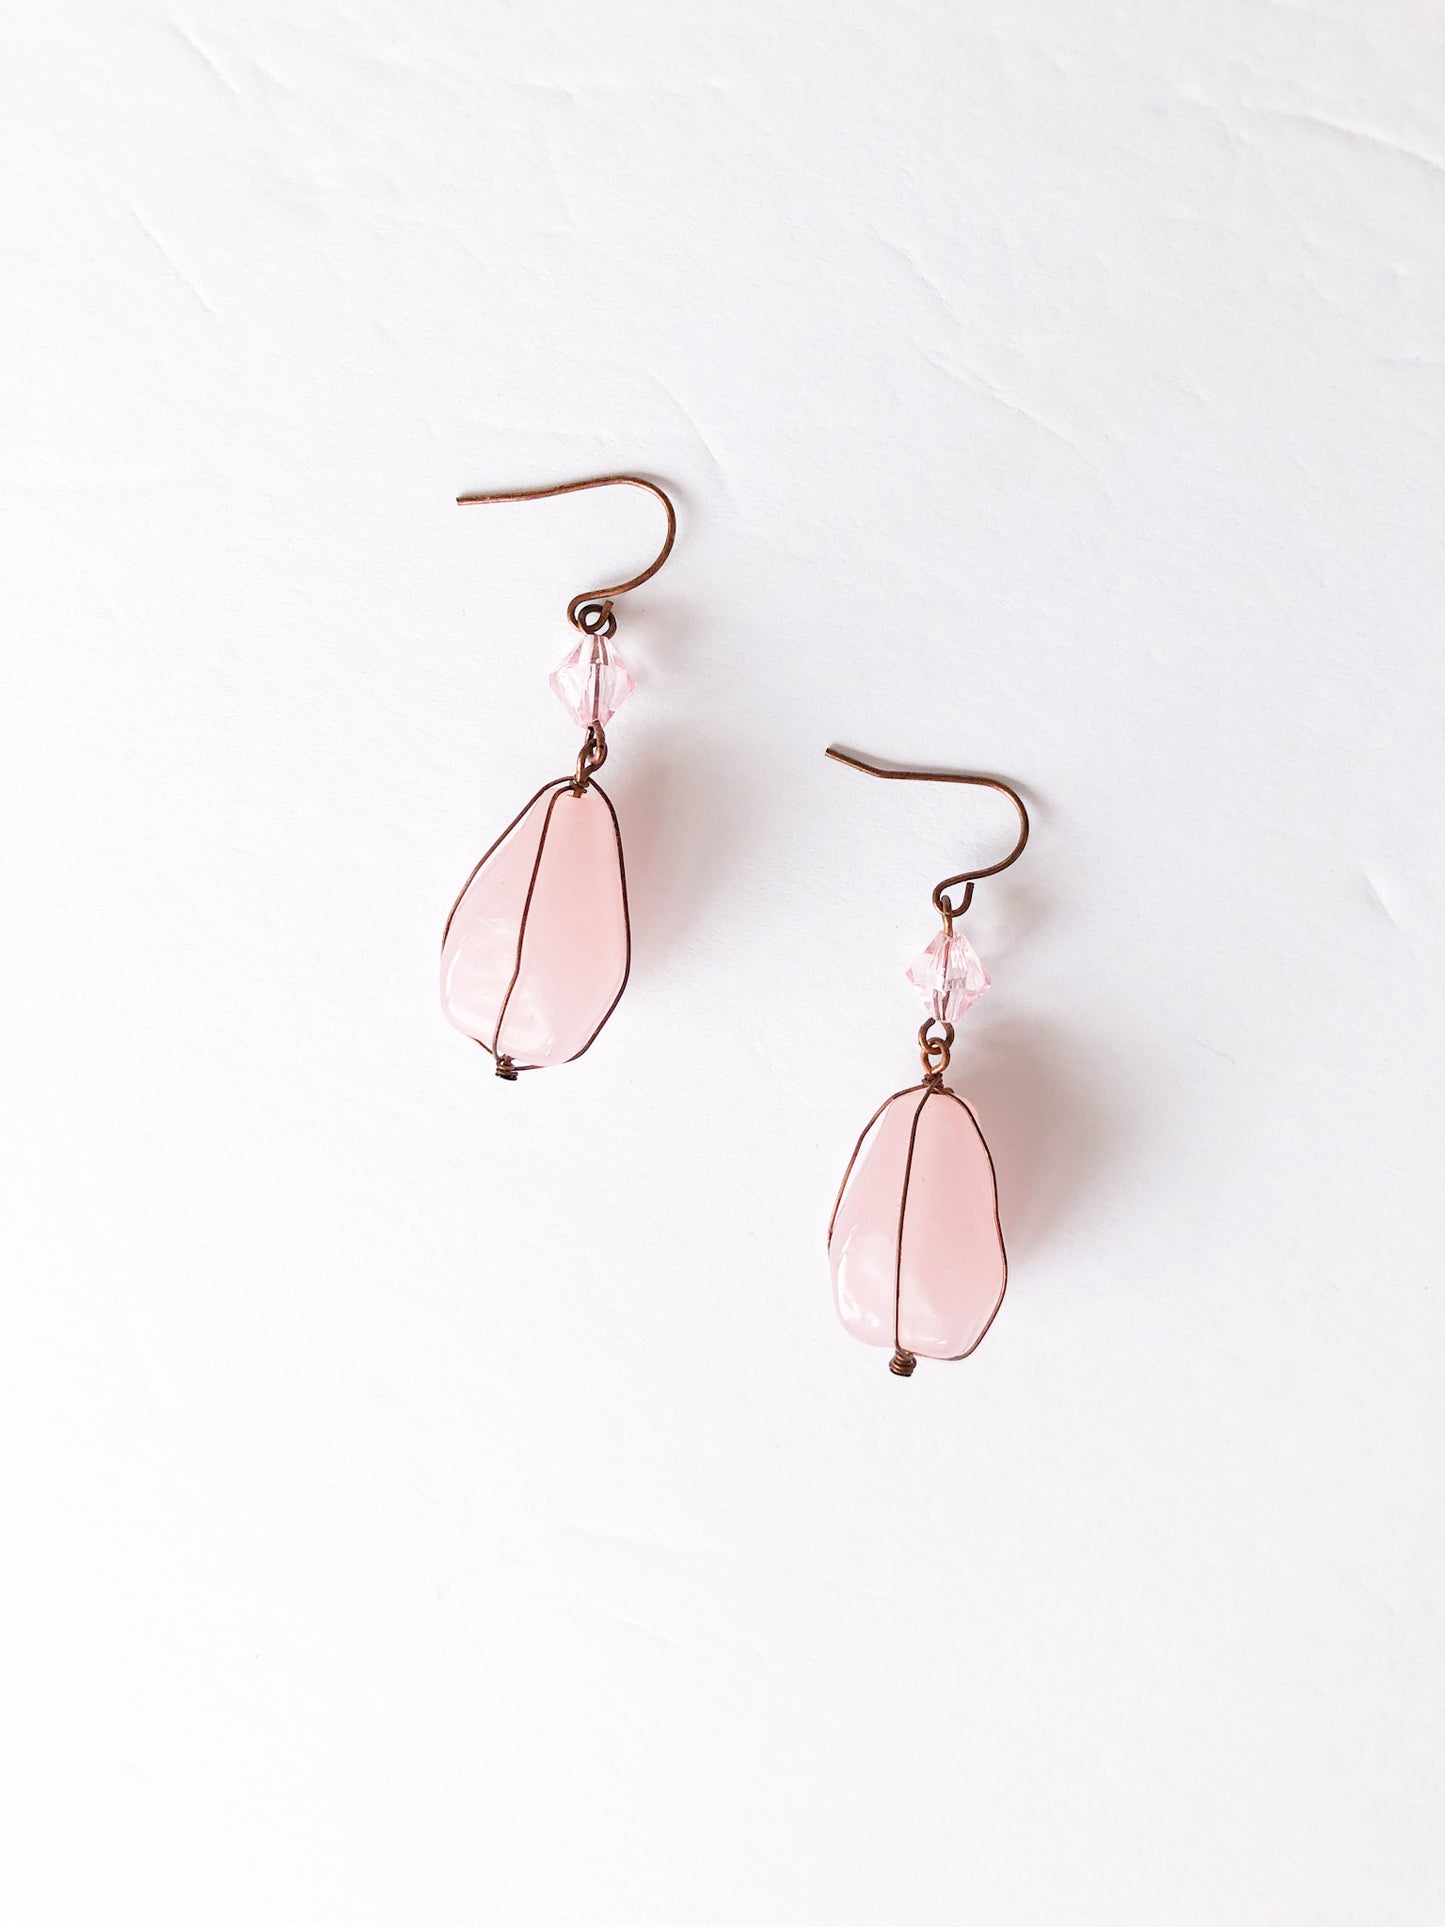 Pink Quartz Copper Wire Dangle Earrings